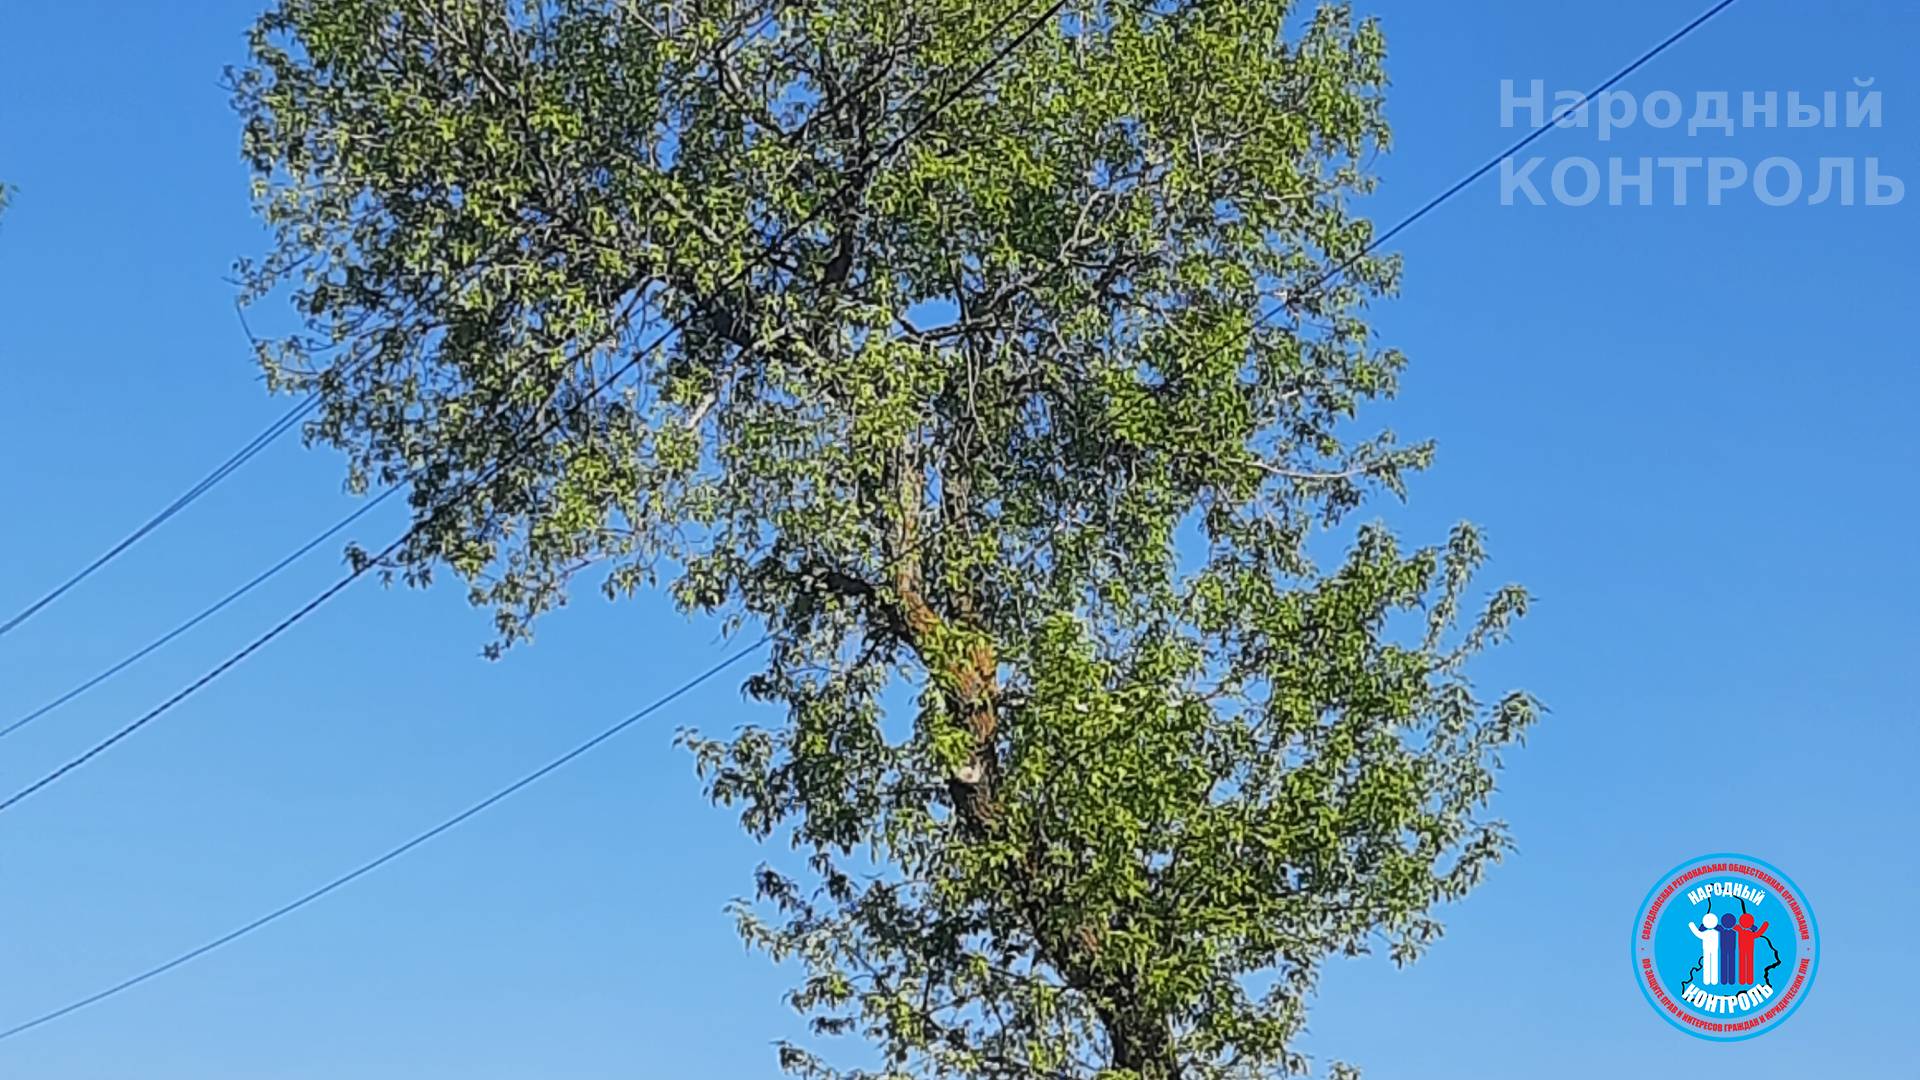 Аварийное дерево угрожает падением на провода и газовую трубу